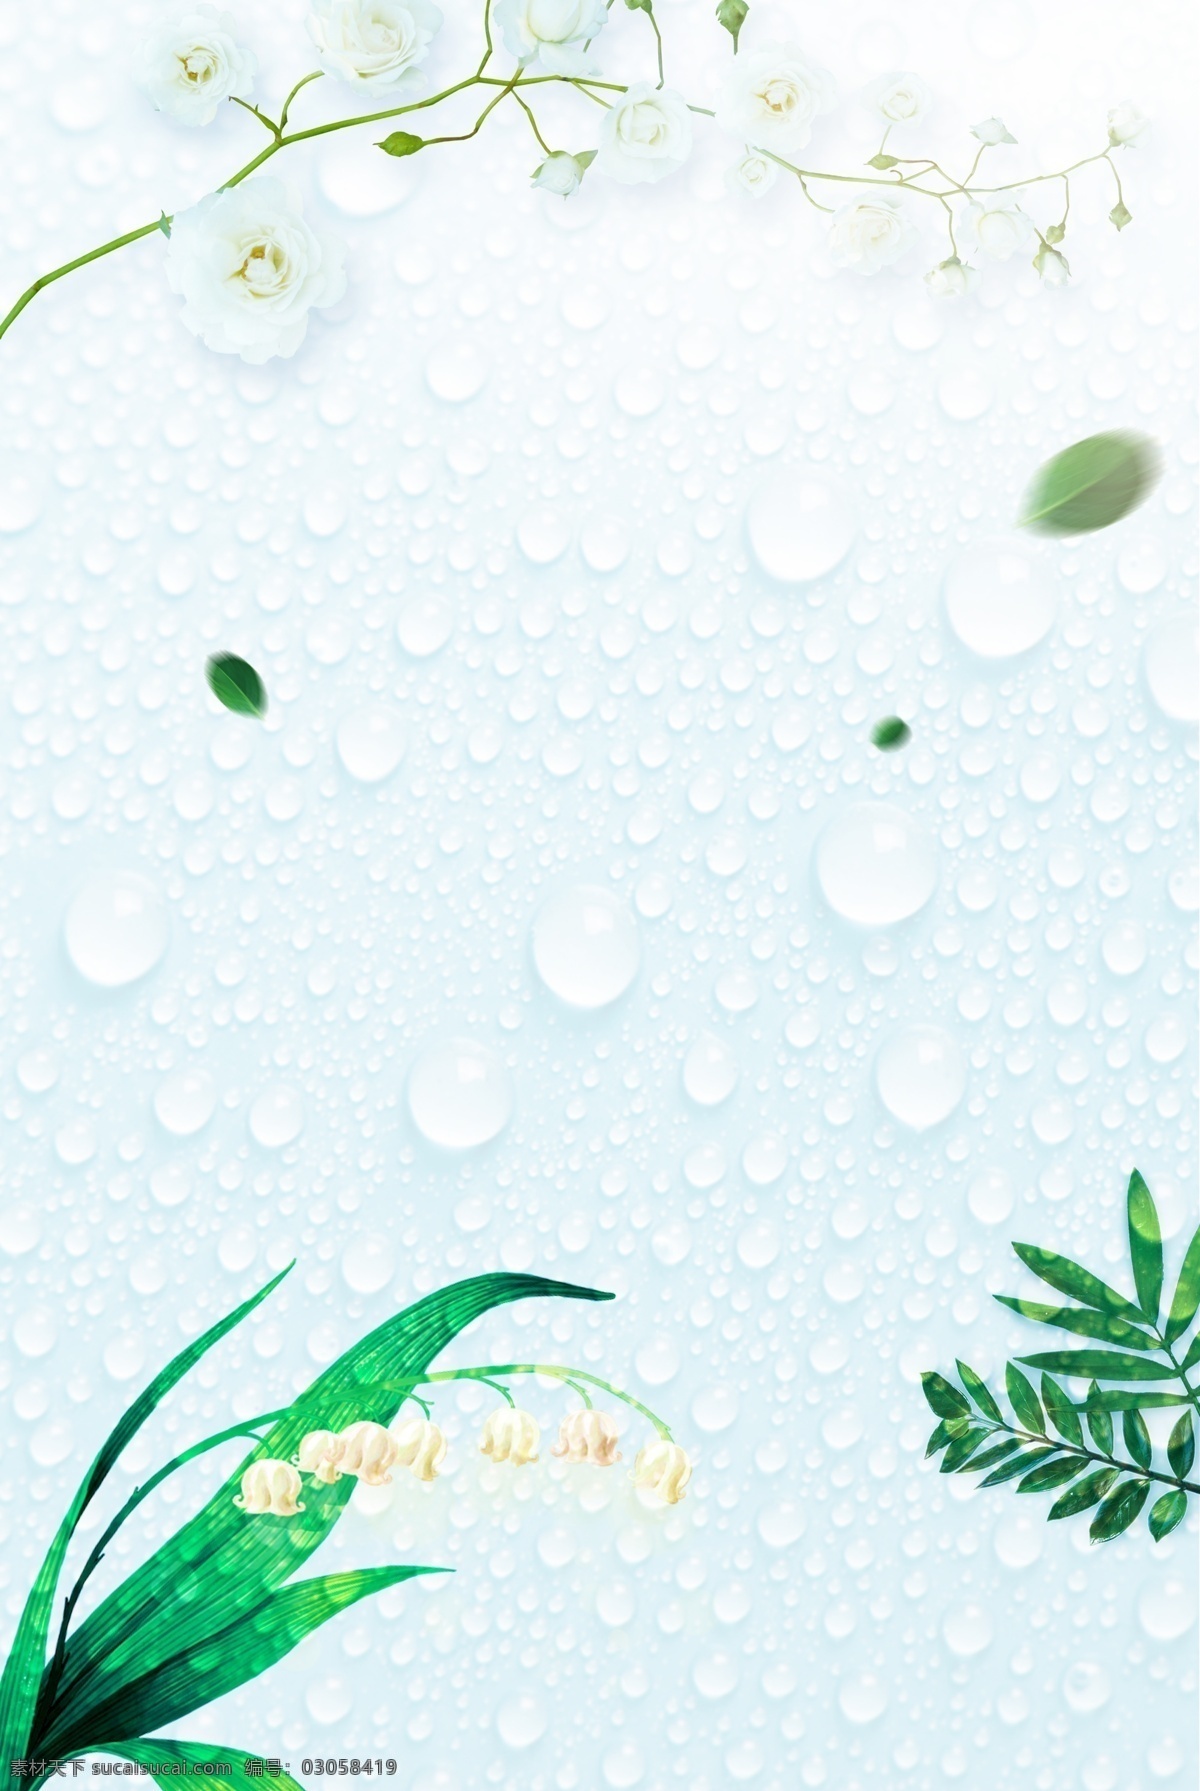 白露 二十四节气 清新 绿植 水珠 海报 传统 习俗 文艺 绿色植物